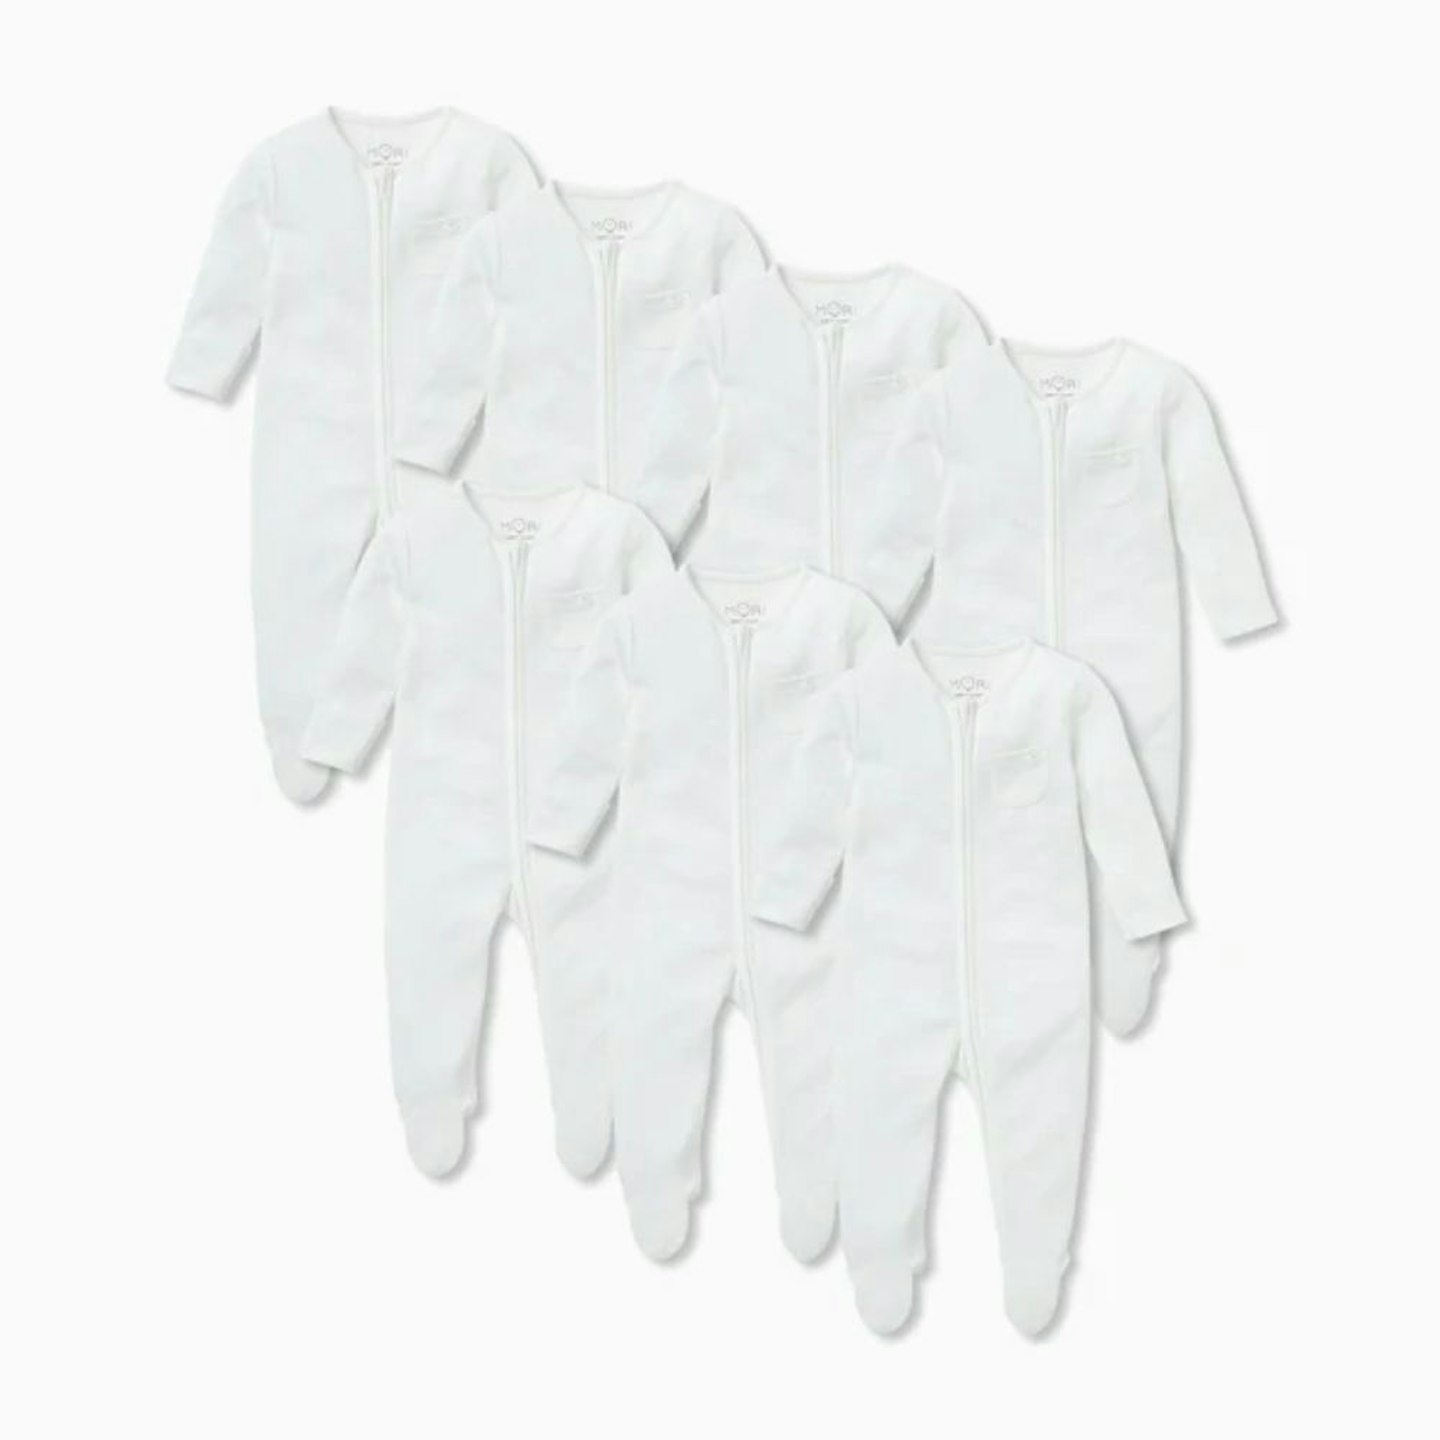 Mori Clever Zip Sleepsuit 7 Pack